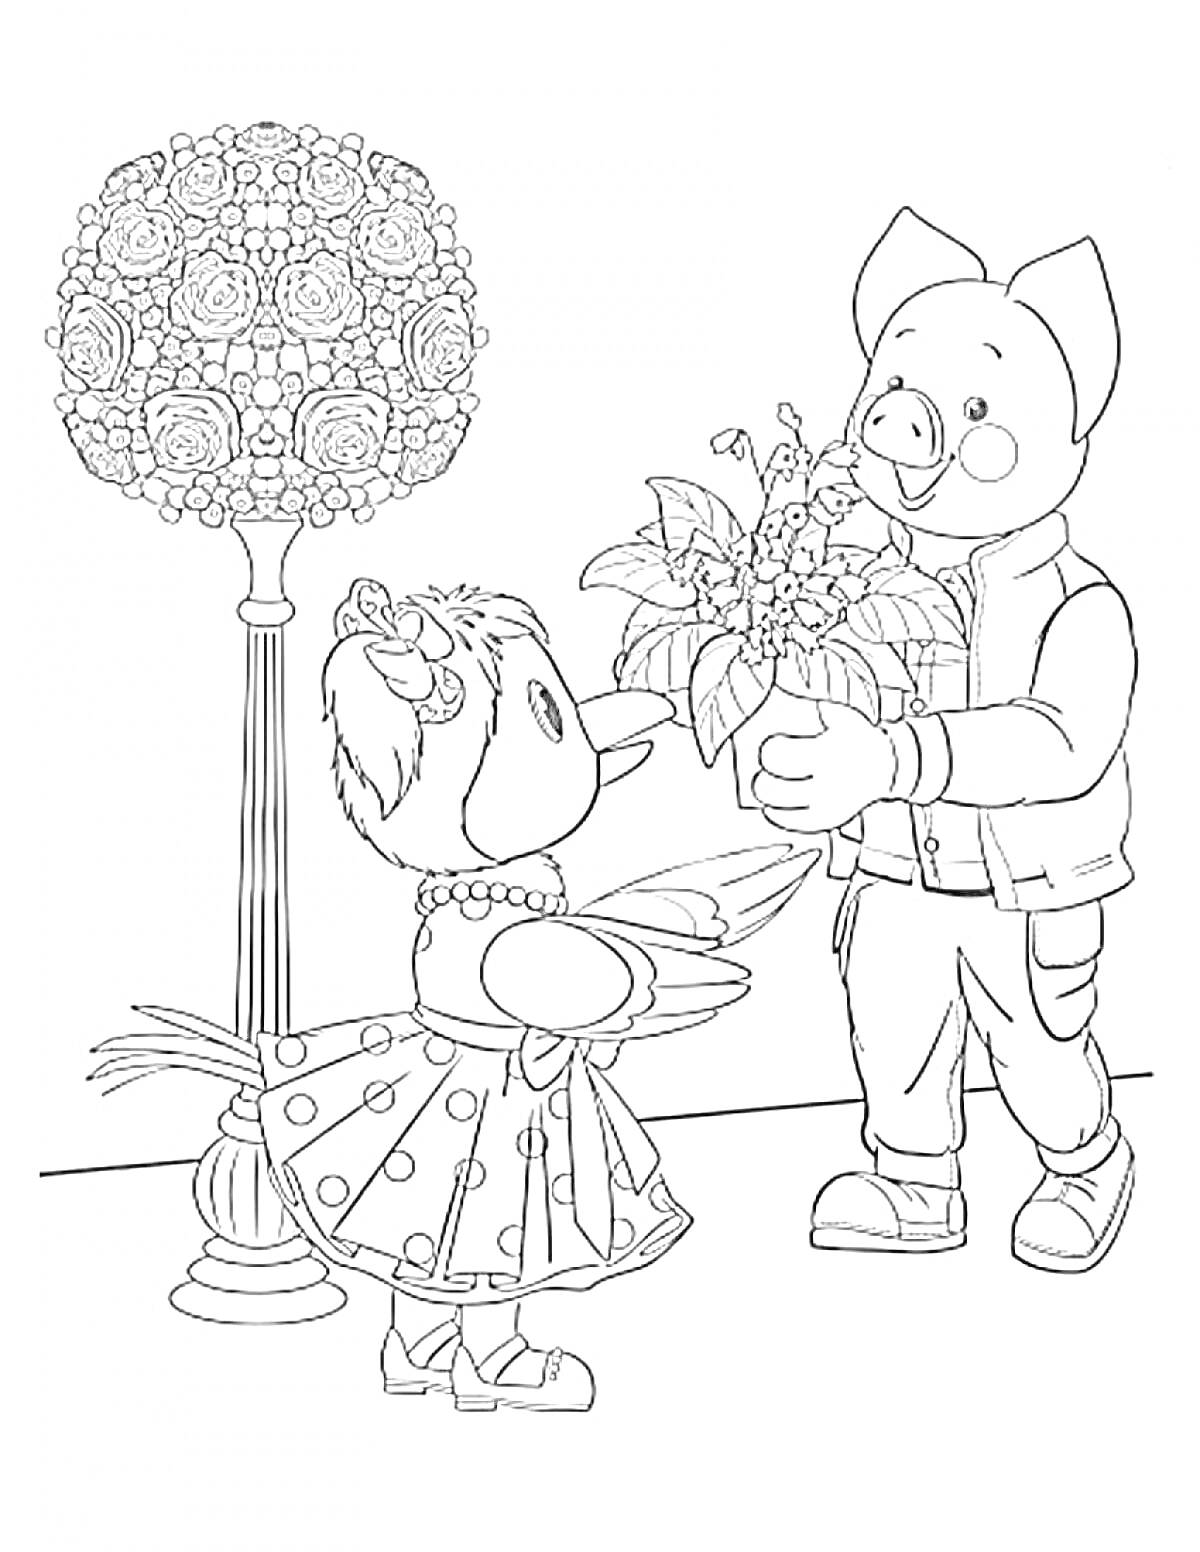 Раскраска Девочка-птичка в платье с крылышками и бантом принимает букет цветов от мальчика-свиньи рядом с декоративным фонарем